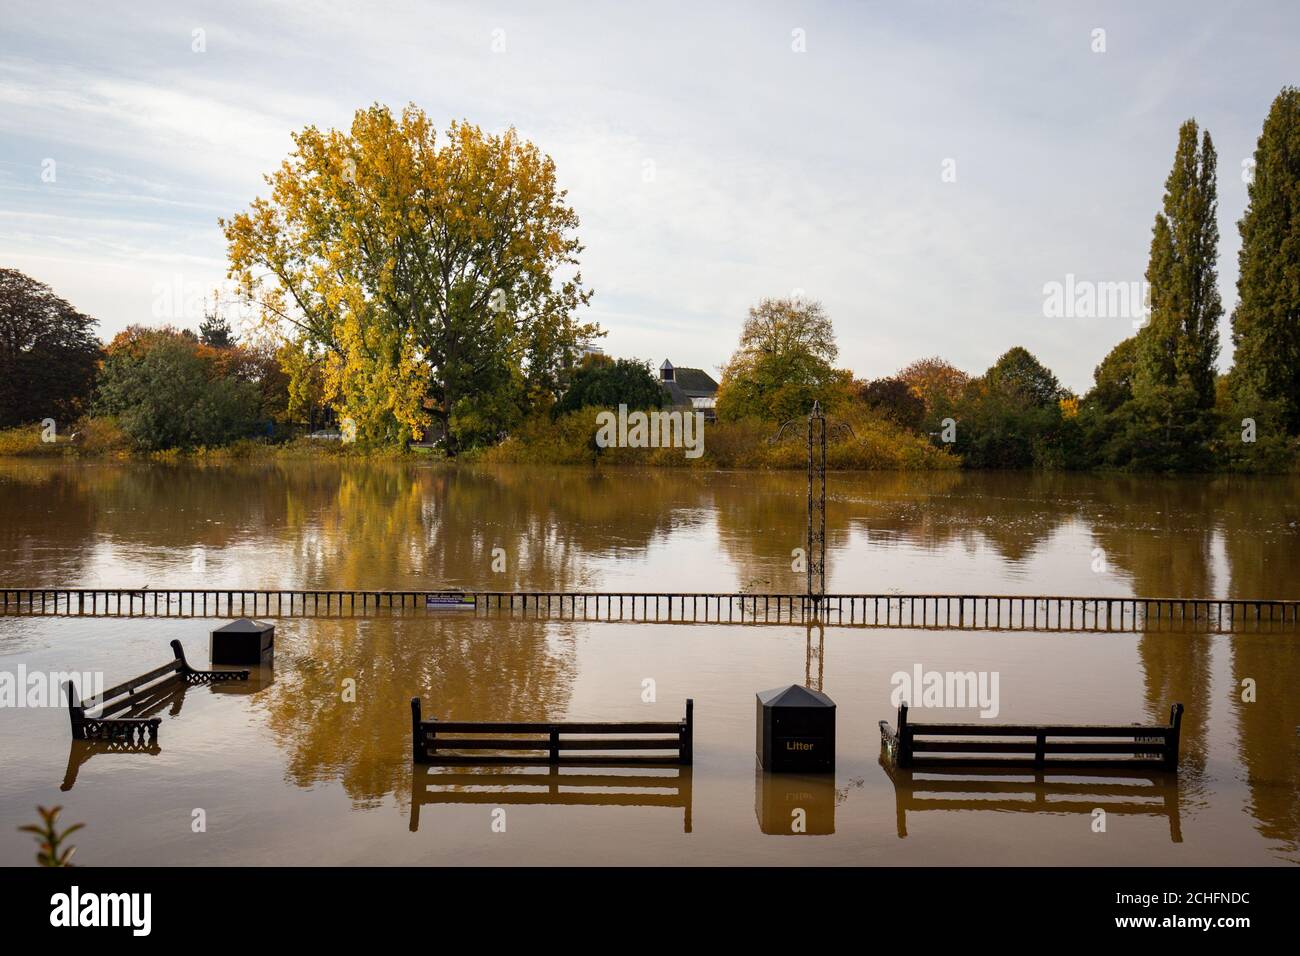 Worcester Stadt umgeben von Wasser aus dem Fluss Severn, wie das Vereinigte Königreich hat sich durch die weit verbreitete überschwemmung geschlagen worden, nachdem Flüsse über die Ufer burst nach dem Wochenende???s Heavy Rain. Stockfoto